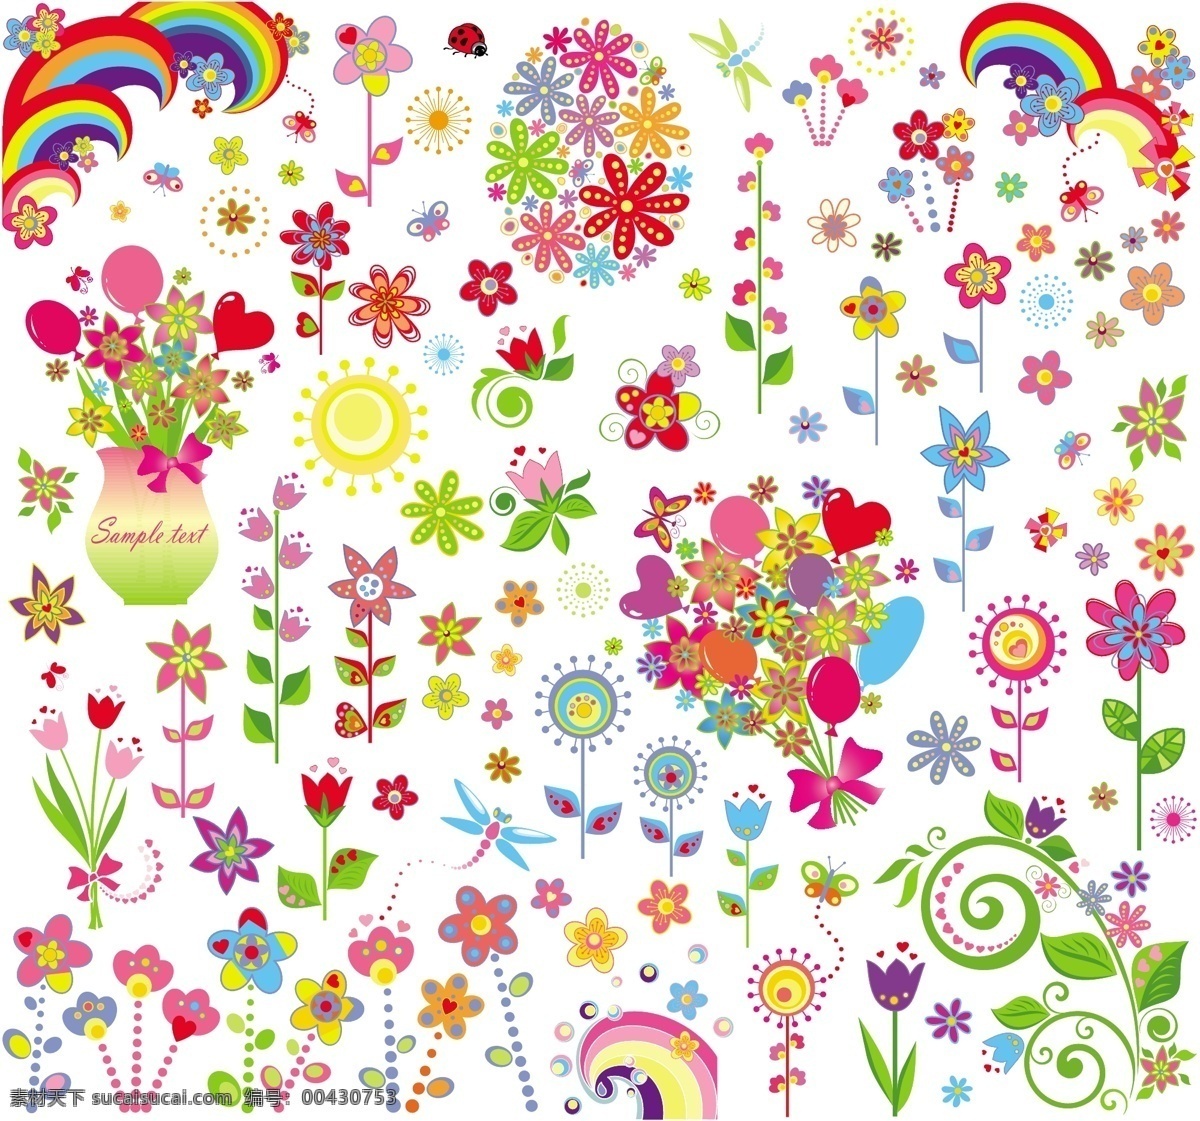 儿童 插画 可爱 花朵 矢量 卡通 彩虹 儿童插画 蜻蜓 矢量素材 太阳 鲜花 心脏 叶 自然 矢量图 日常生活